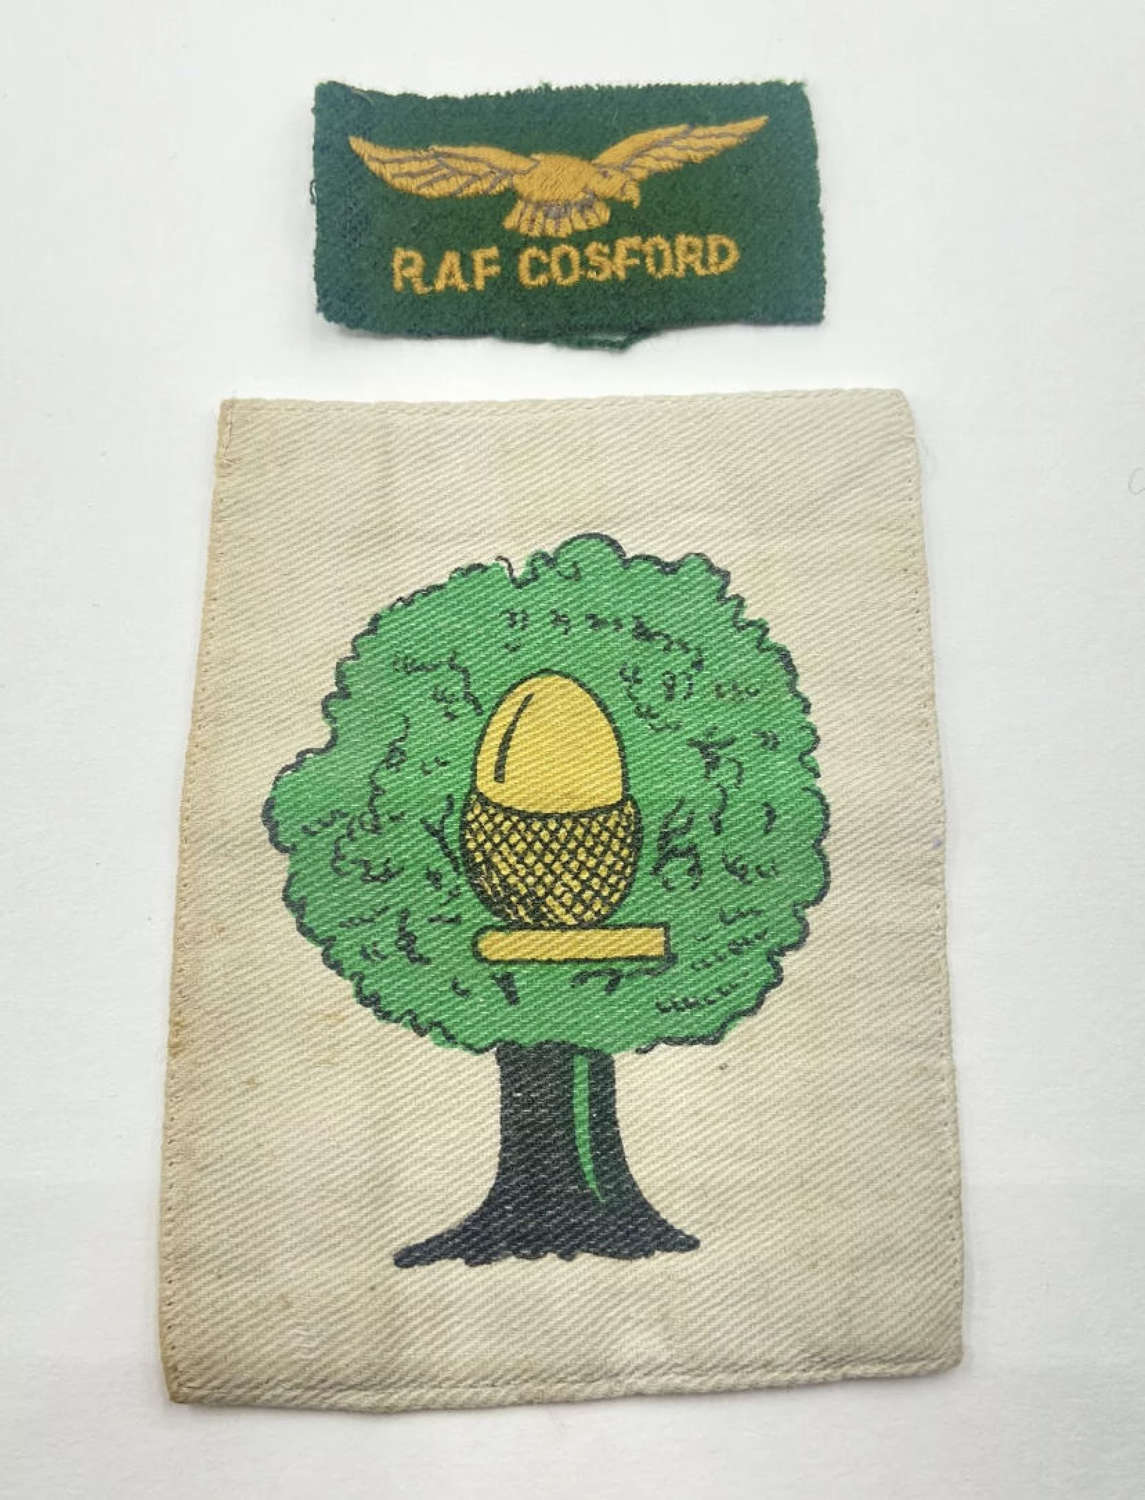 WW2 British RAF Cosford Battledress Patch & PT Shirt Emblem